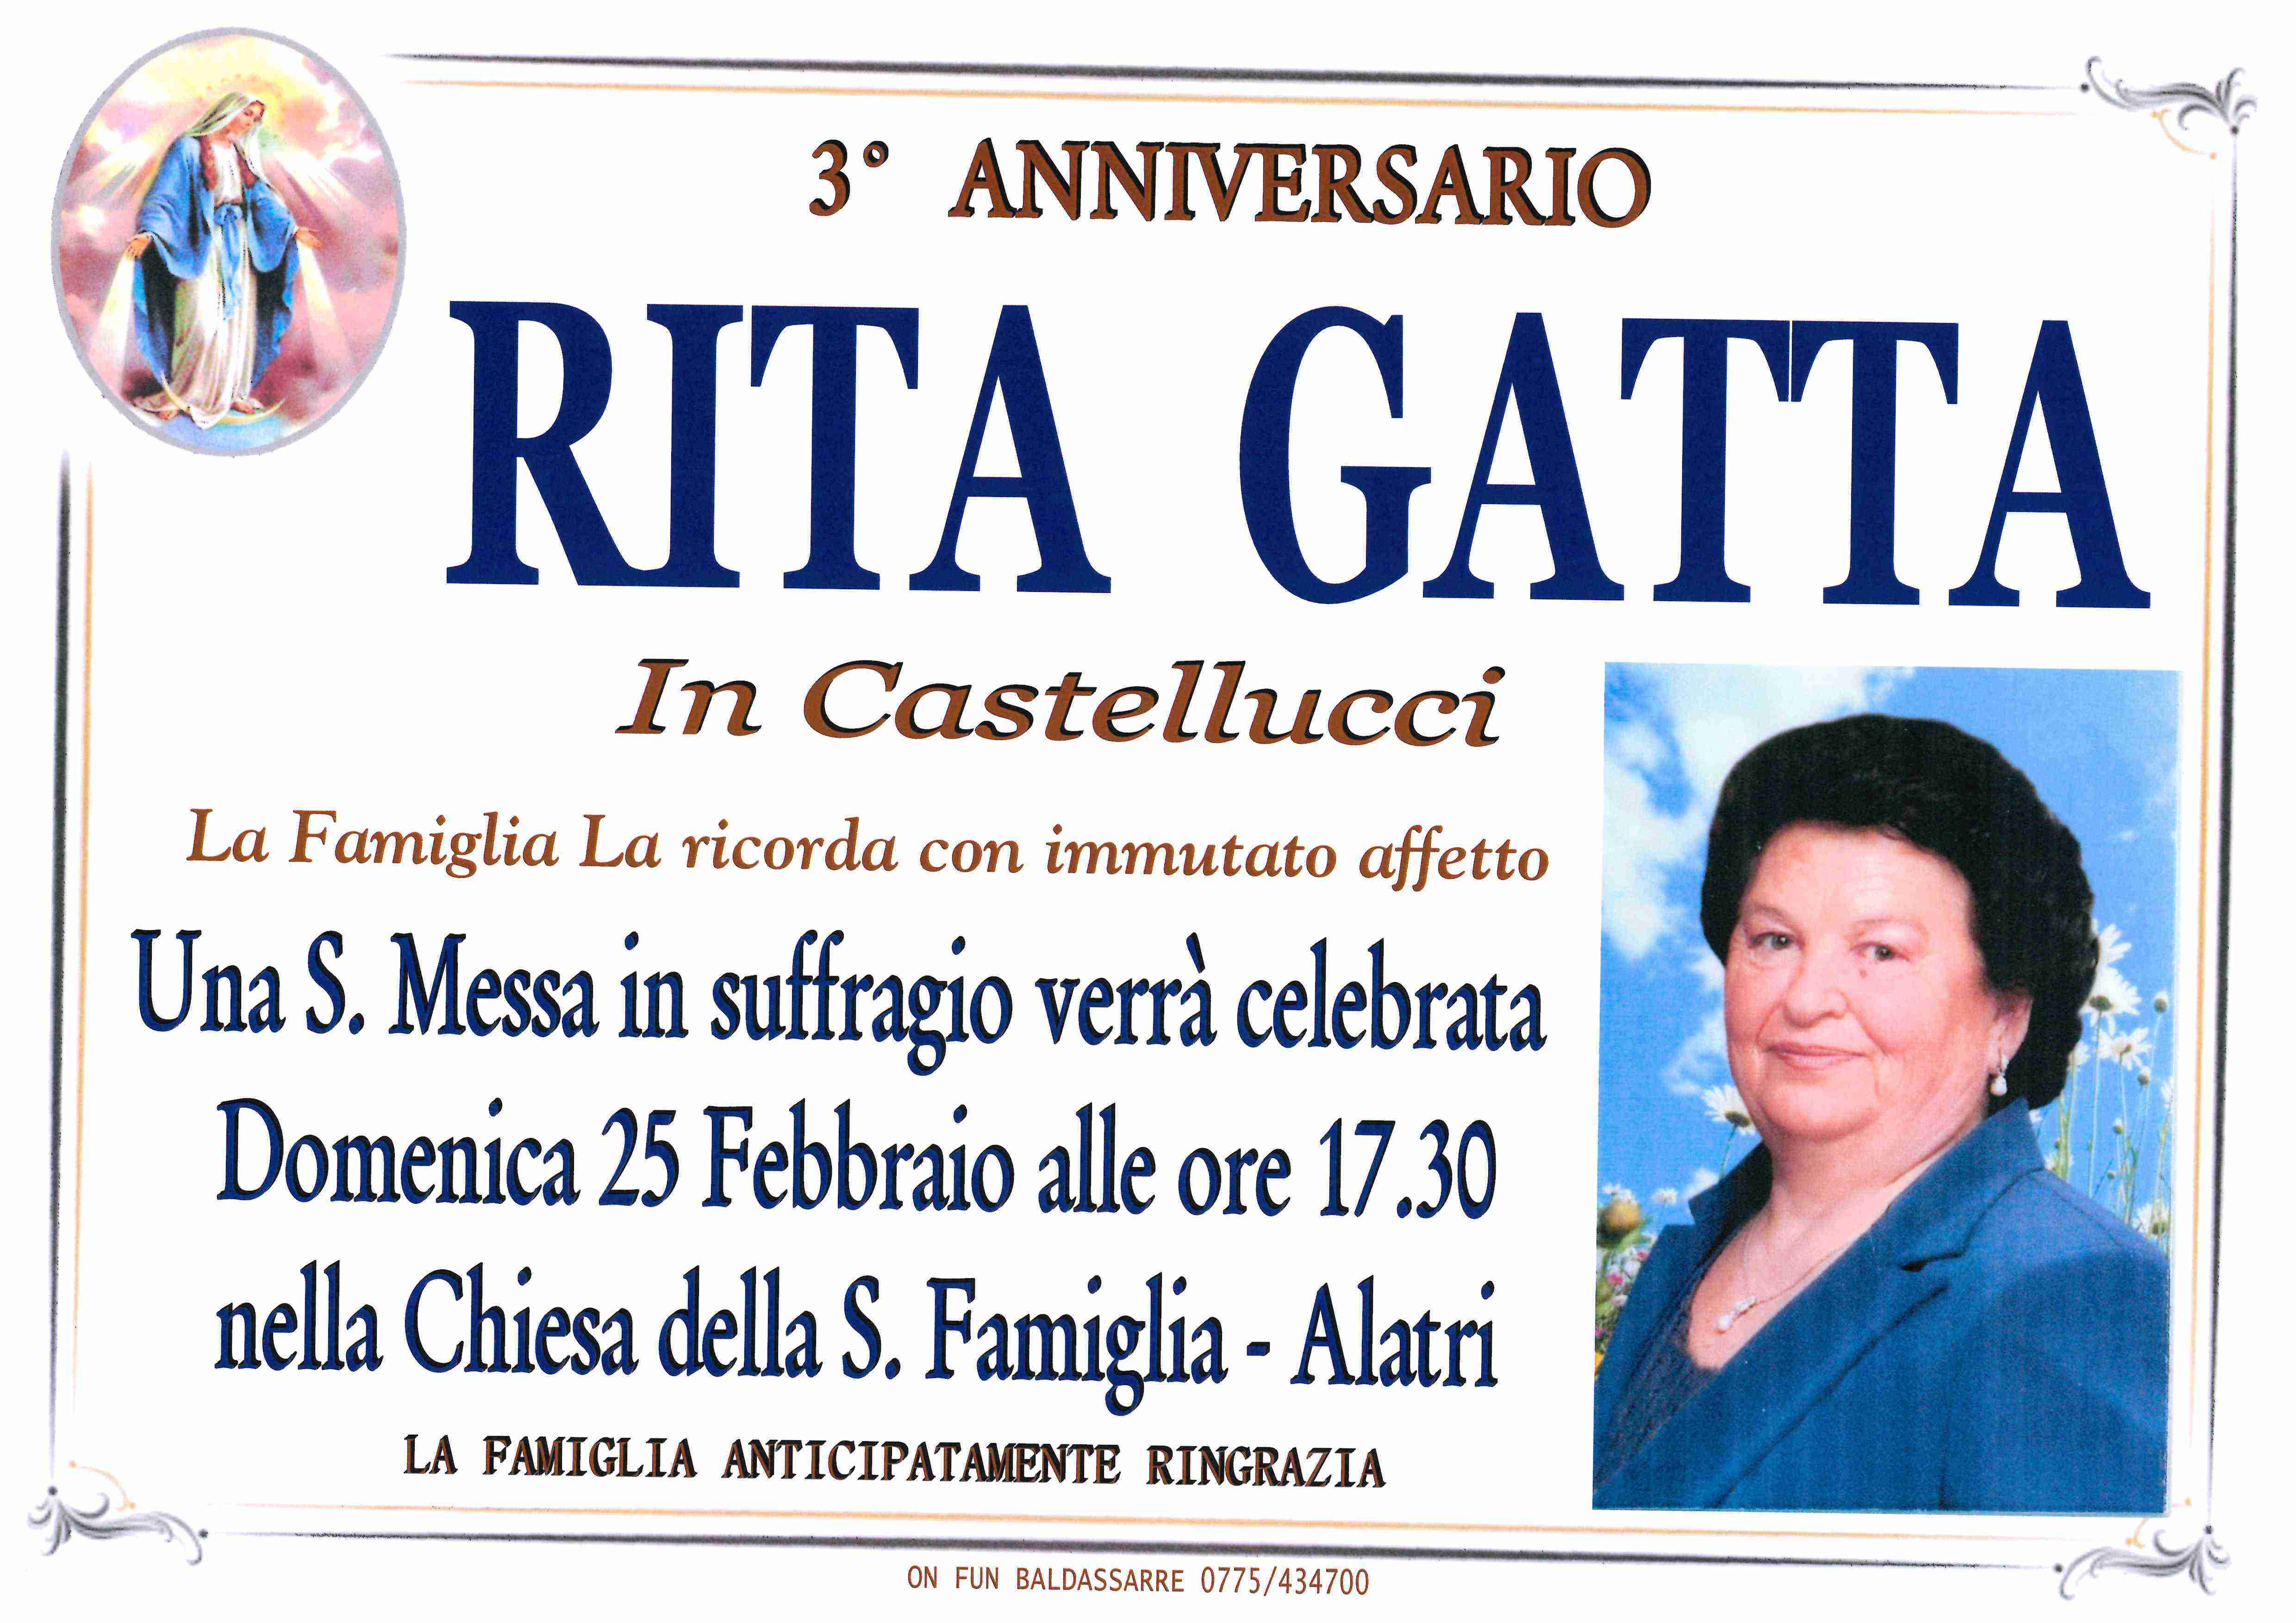 Rita Gatta